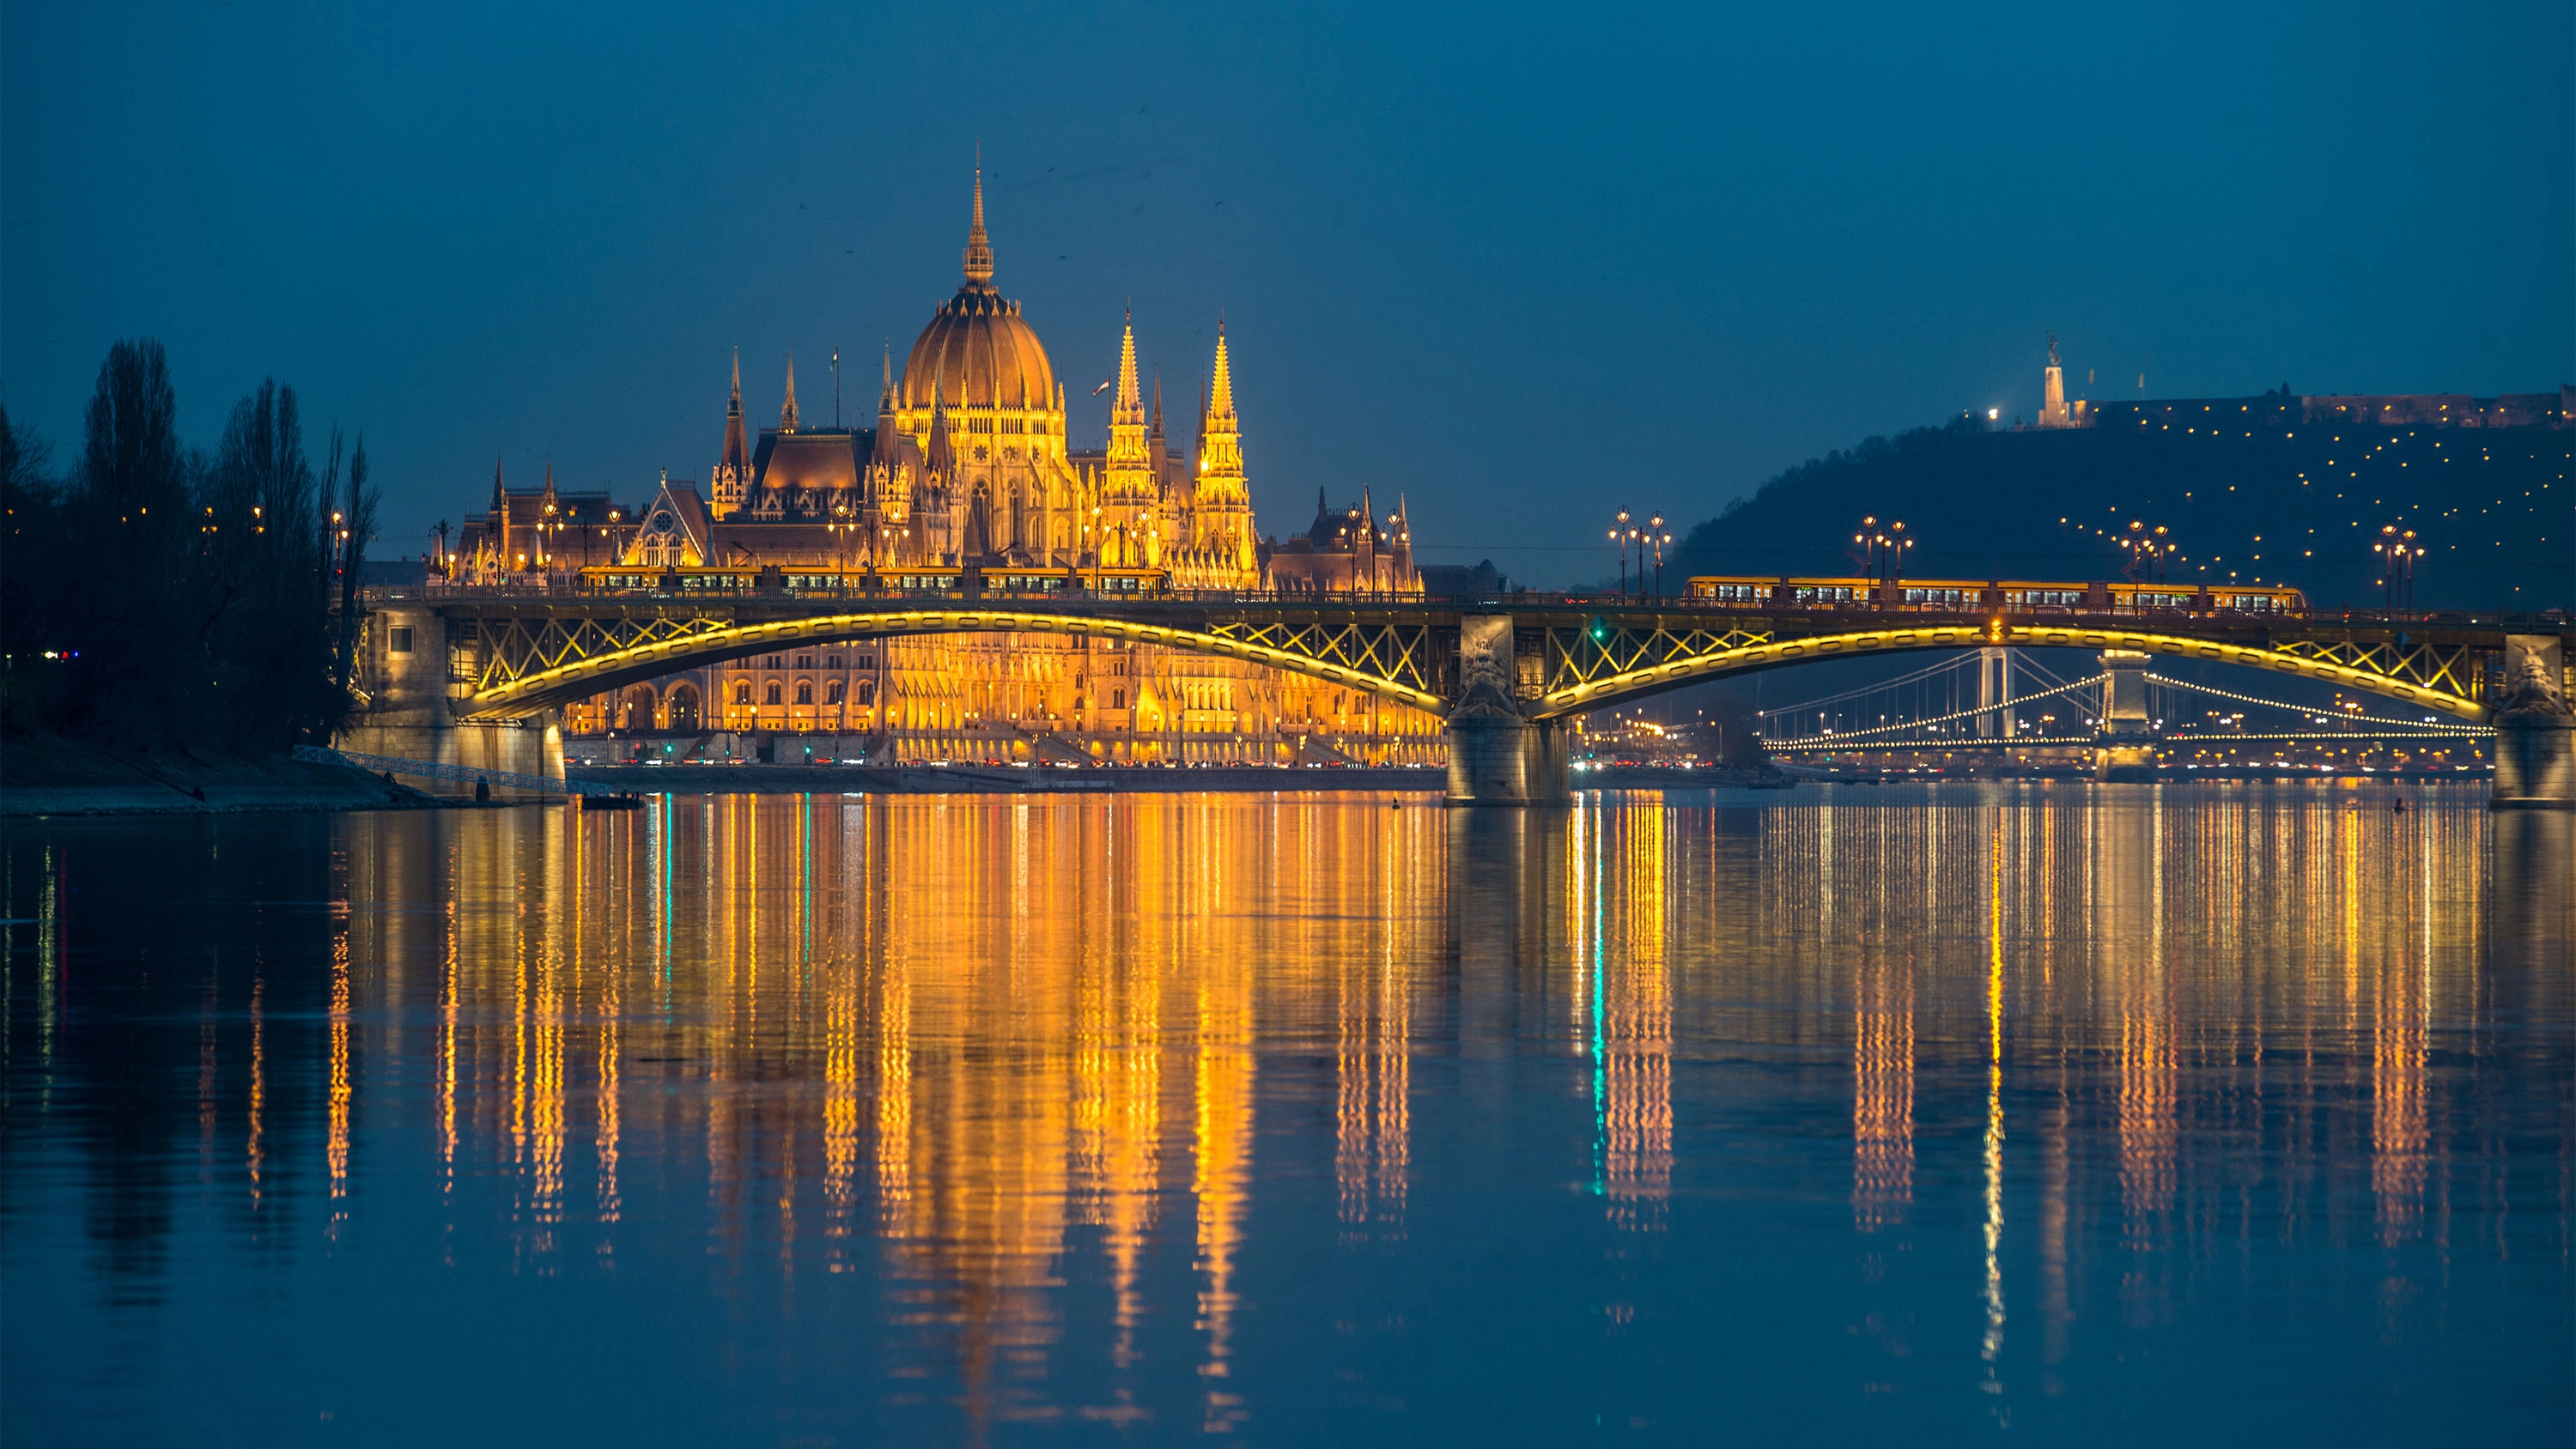 A világ legjobb úti céljai közé választották Budapestet